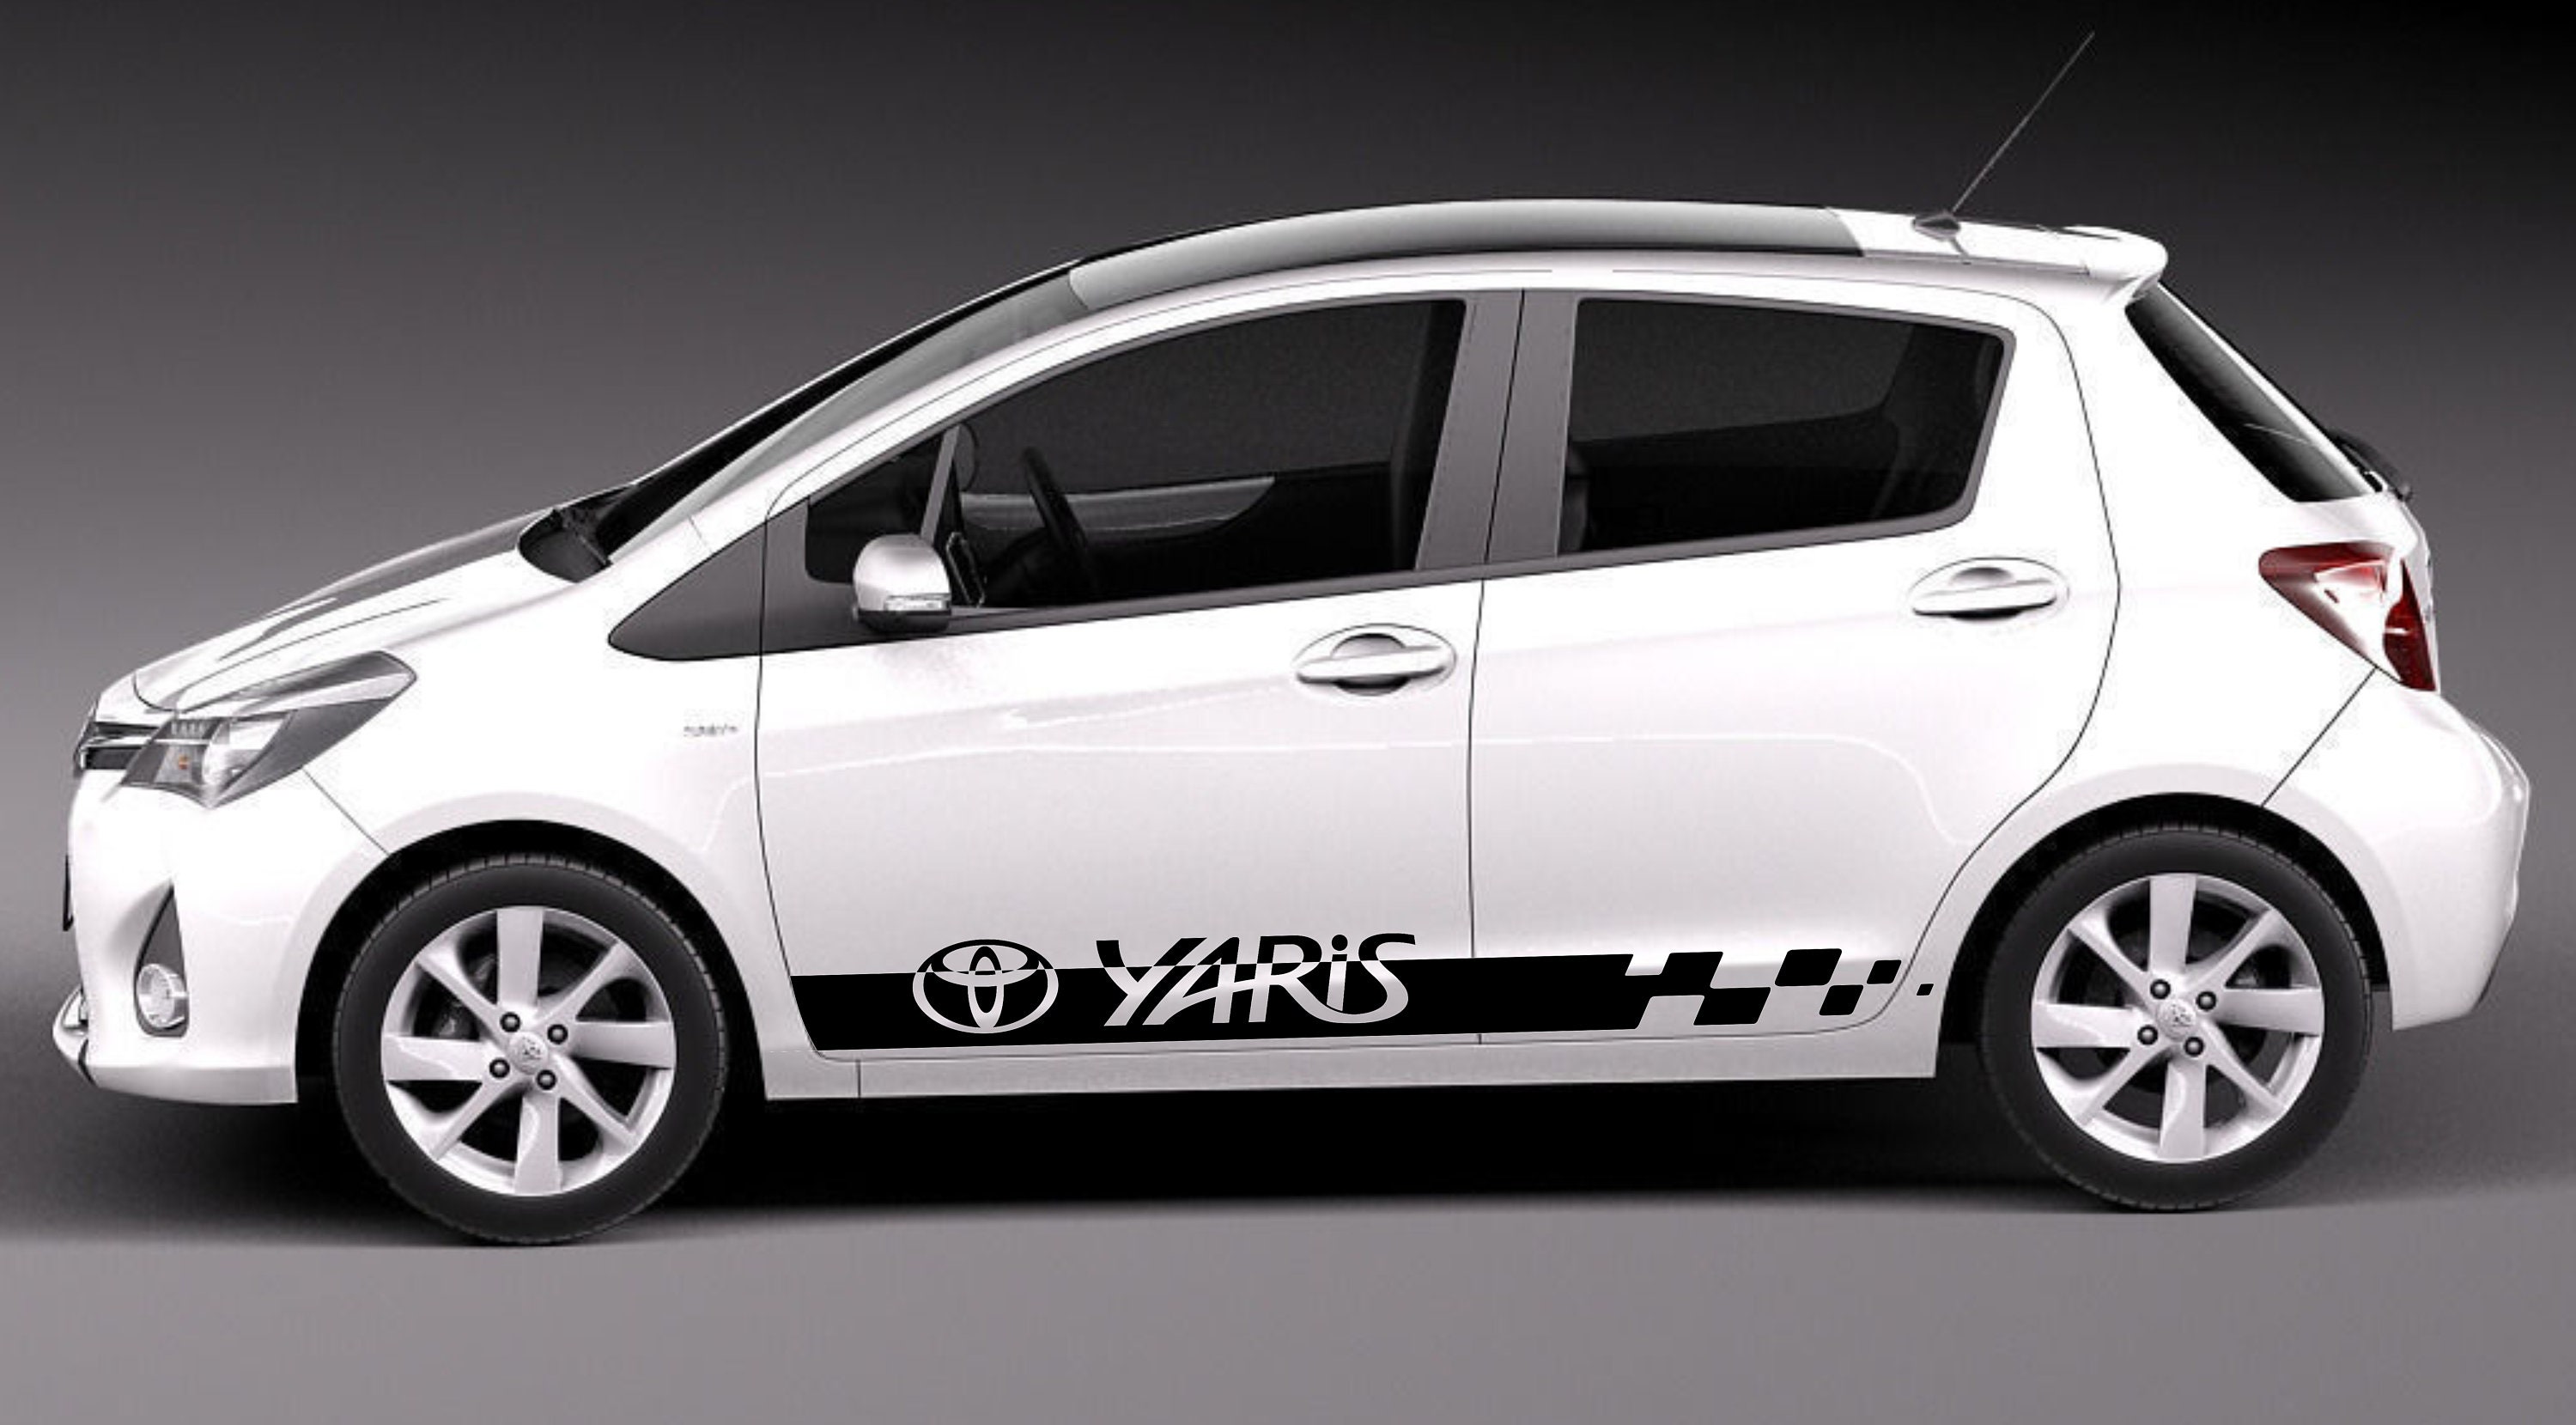  ZYHZJC 2 unids coche pegatinas auto lado cuerpo pegatinas coche  accesorios para Toyota Corolla Yaris C-HR : Automotriz